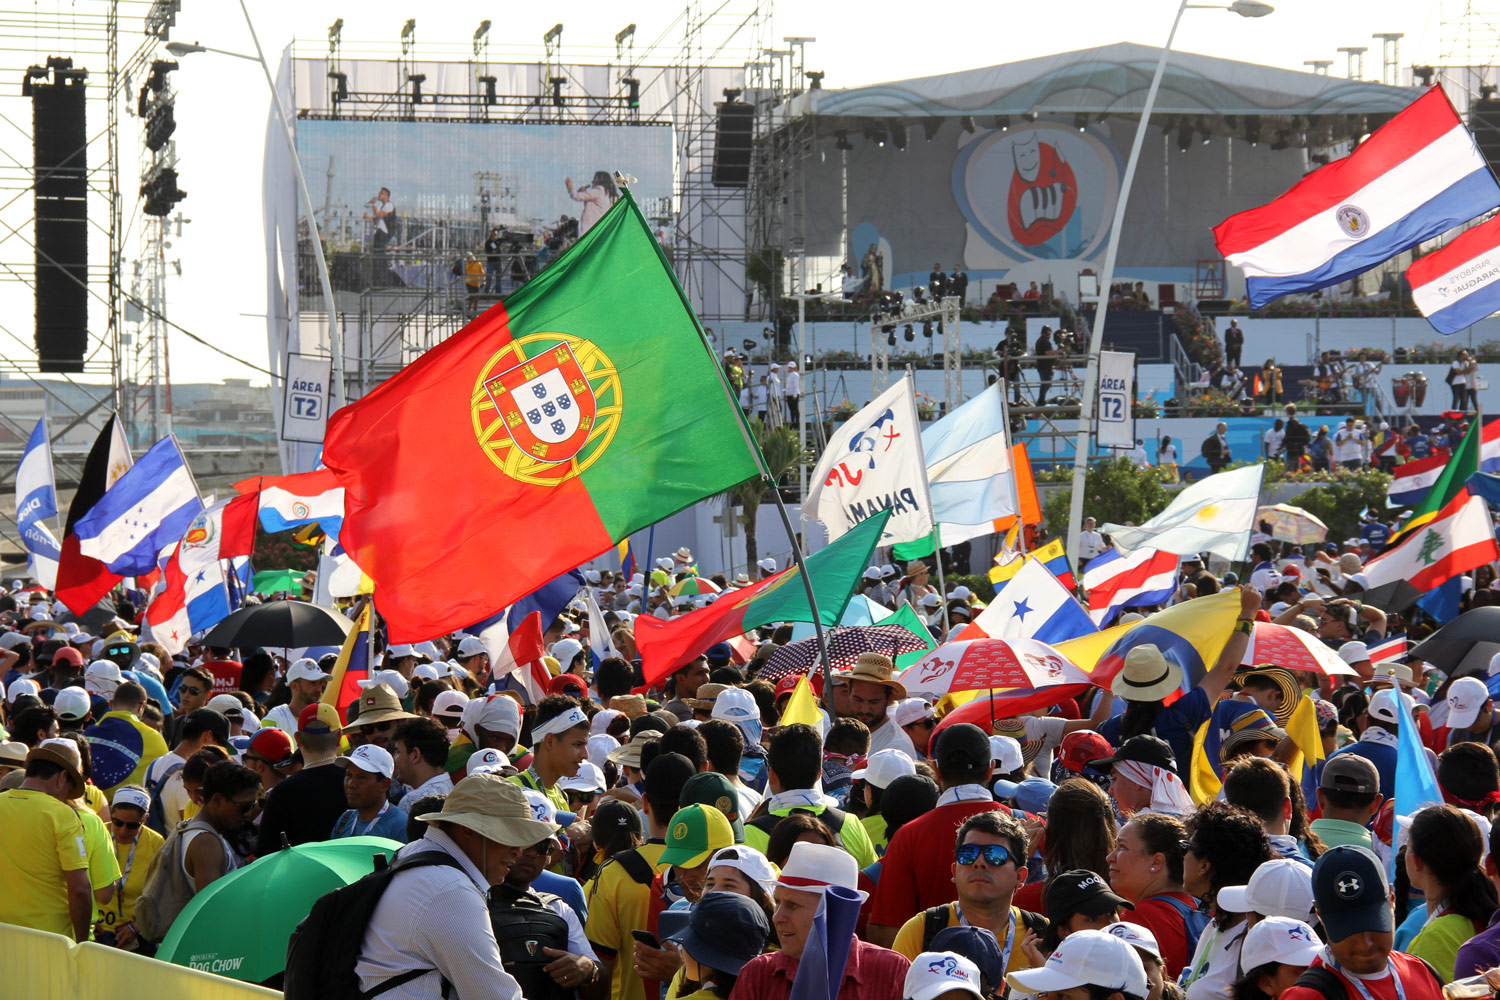 “No tengan miedo” pide el Papa Francisco en Lisboa a jóvenes